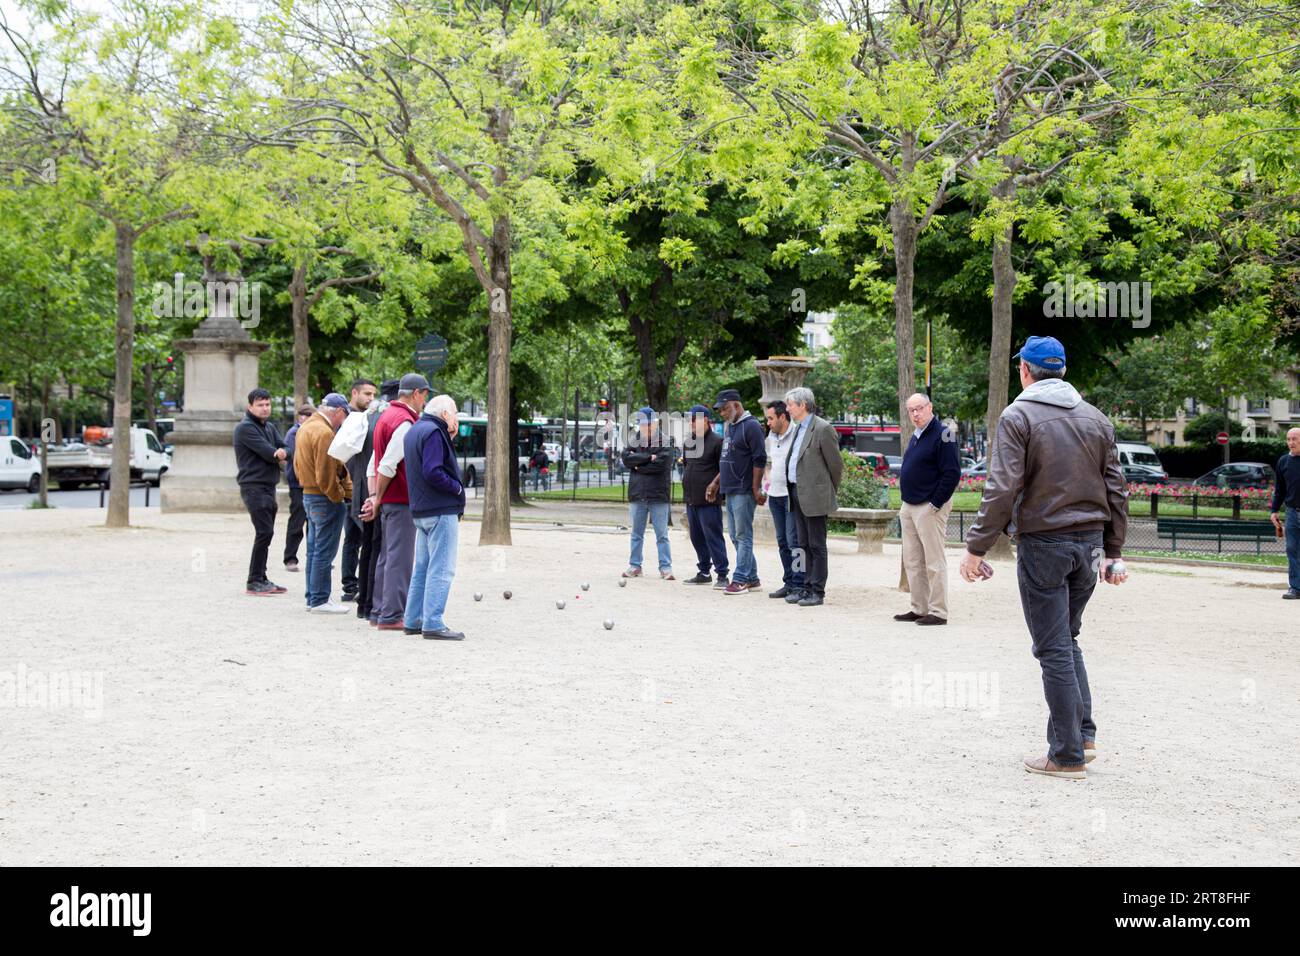 Paris, France, 11 mai 2017 : groupe d'hommes jouant à la pétanque dans un parc public Banque D'Images